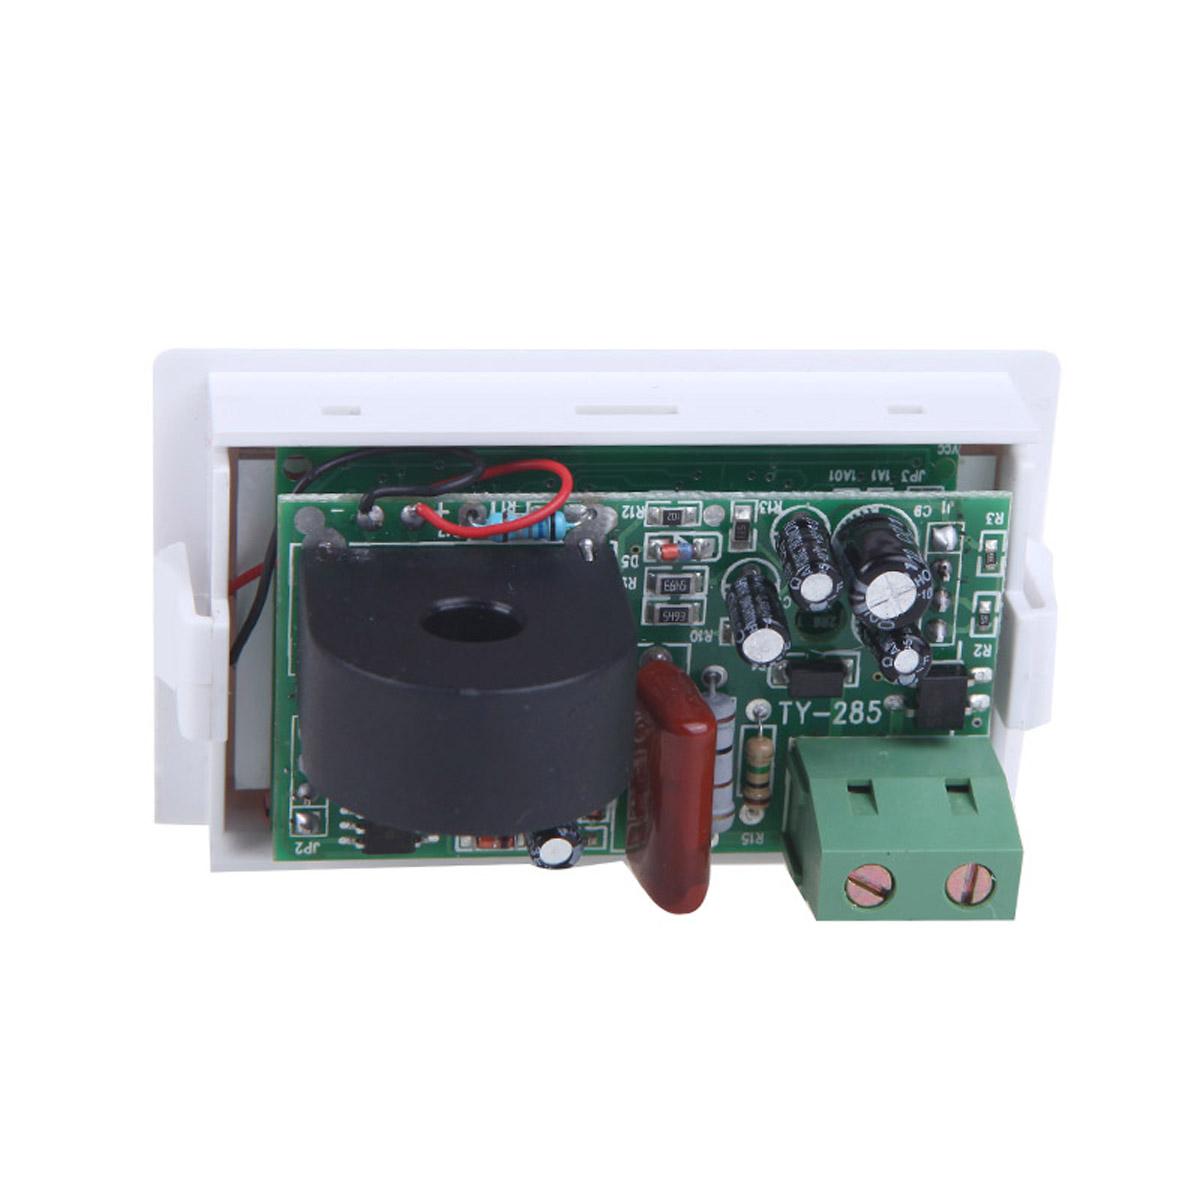 D85-2041-LCD-Display-Digital-AC100-300V-50A-Ammeter-Voltmeter-Meter-Tester-Amp-Panel-Meter-With-Blue-1443865